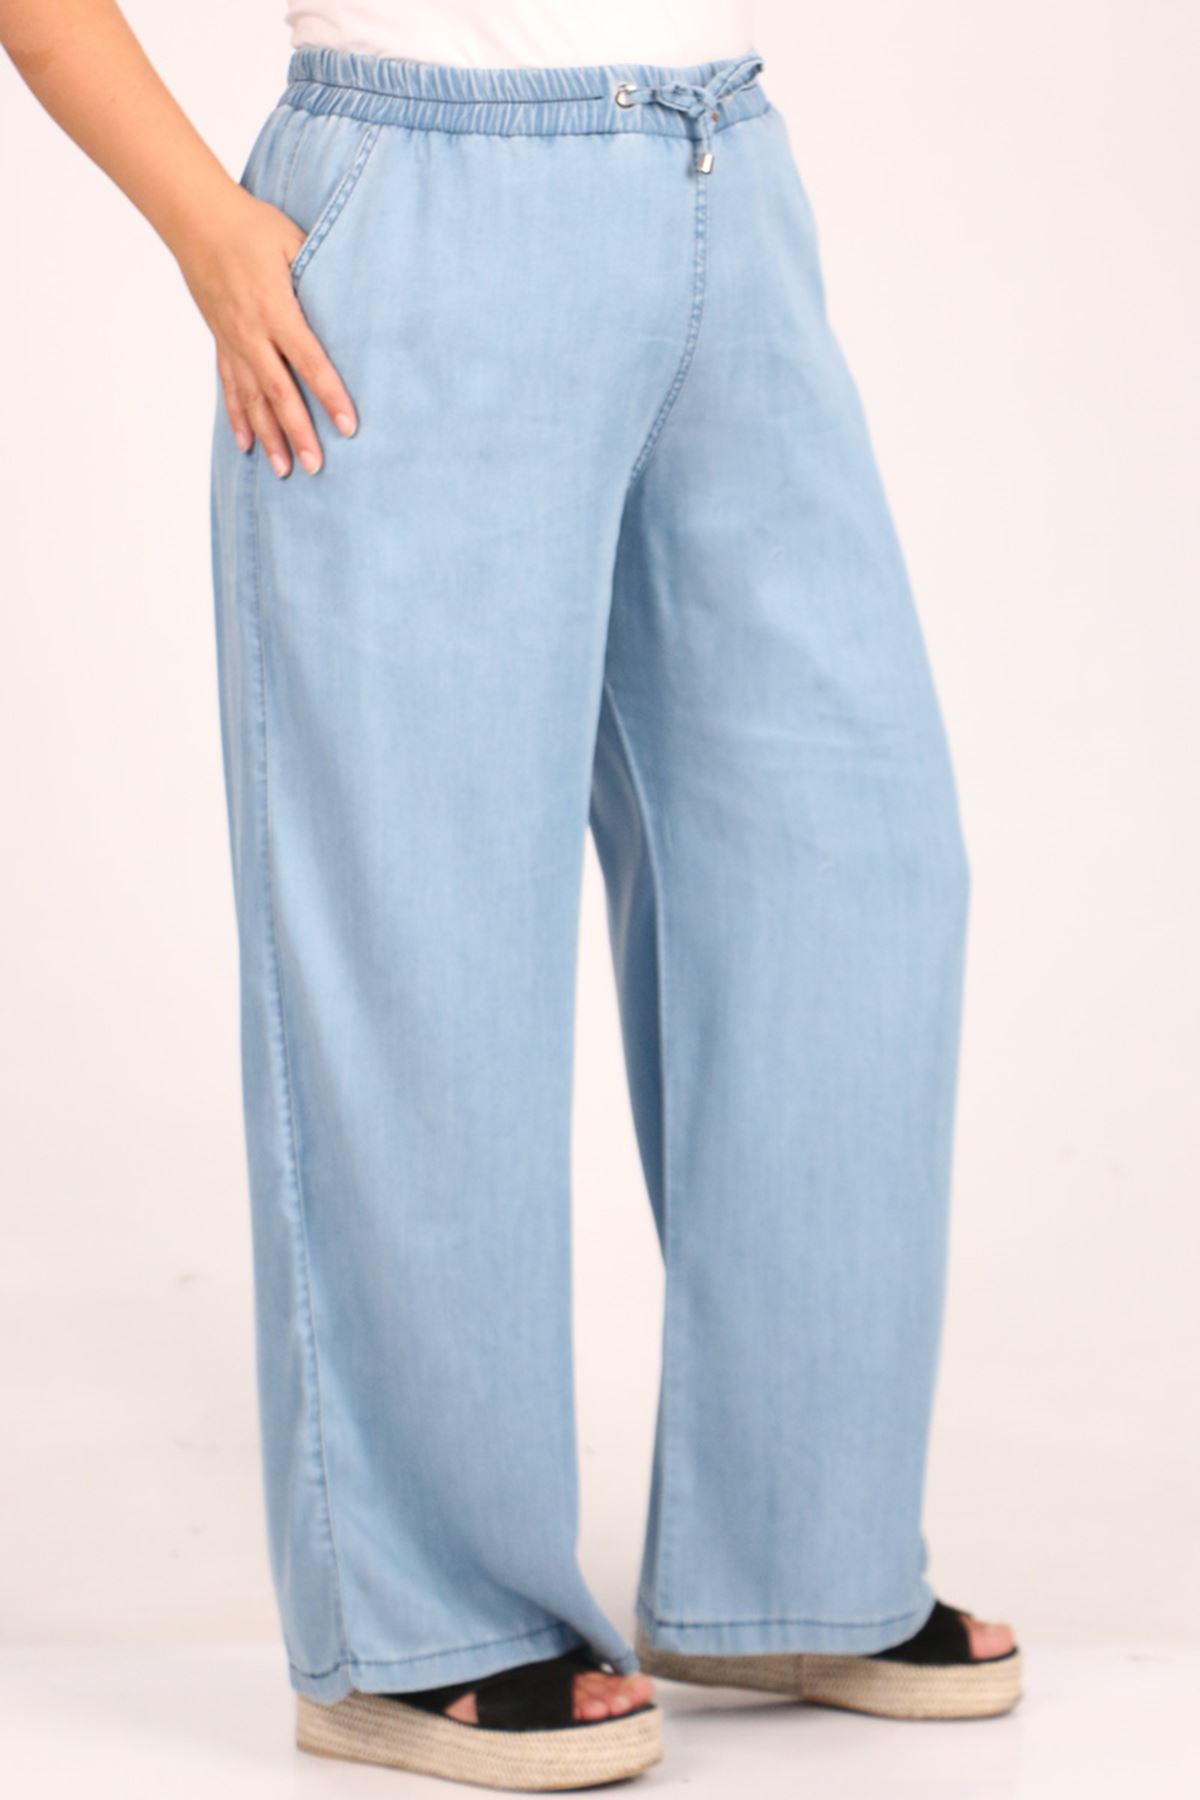 29000-2 Plus Size Plentiful Trotter Jeans Pants - Buz Blue